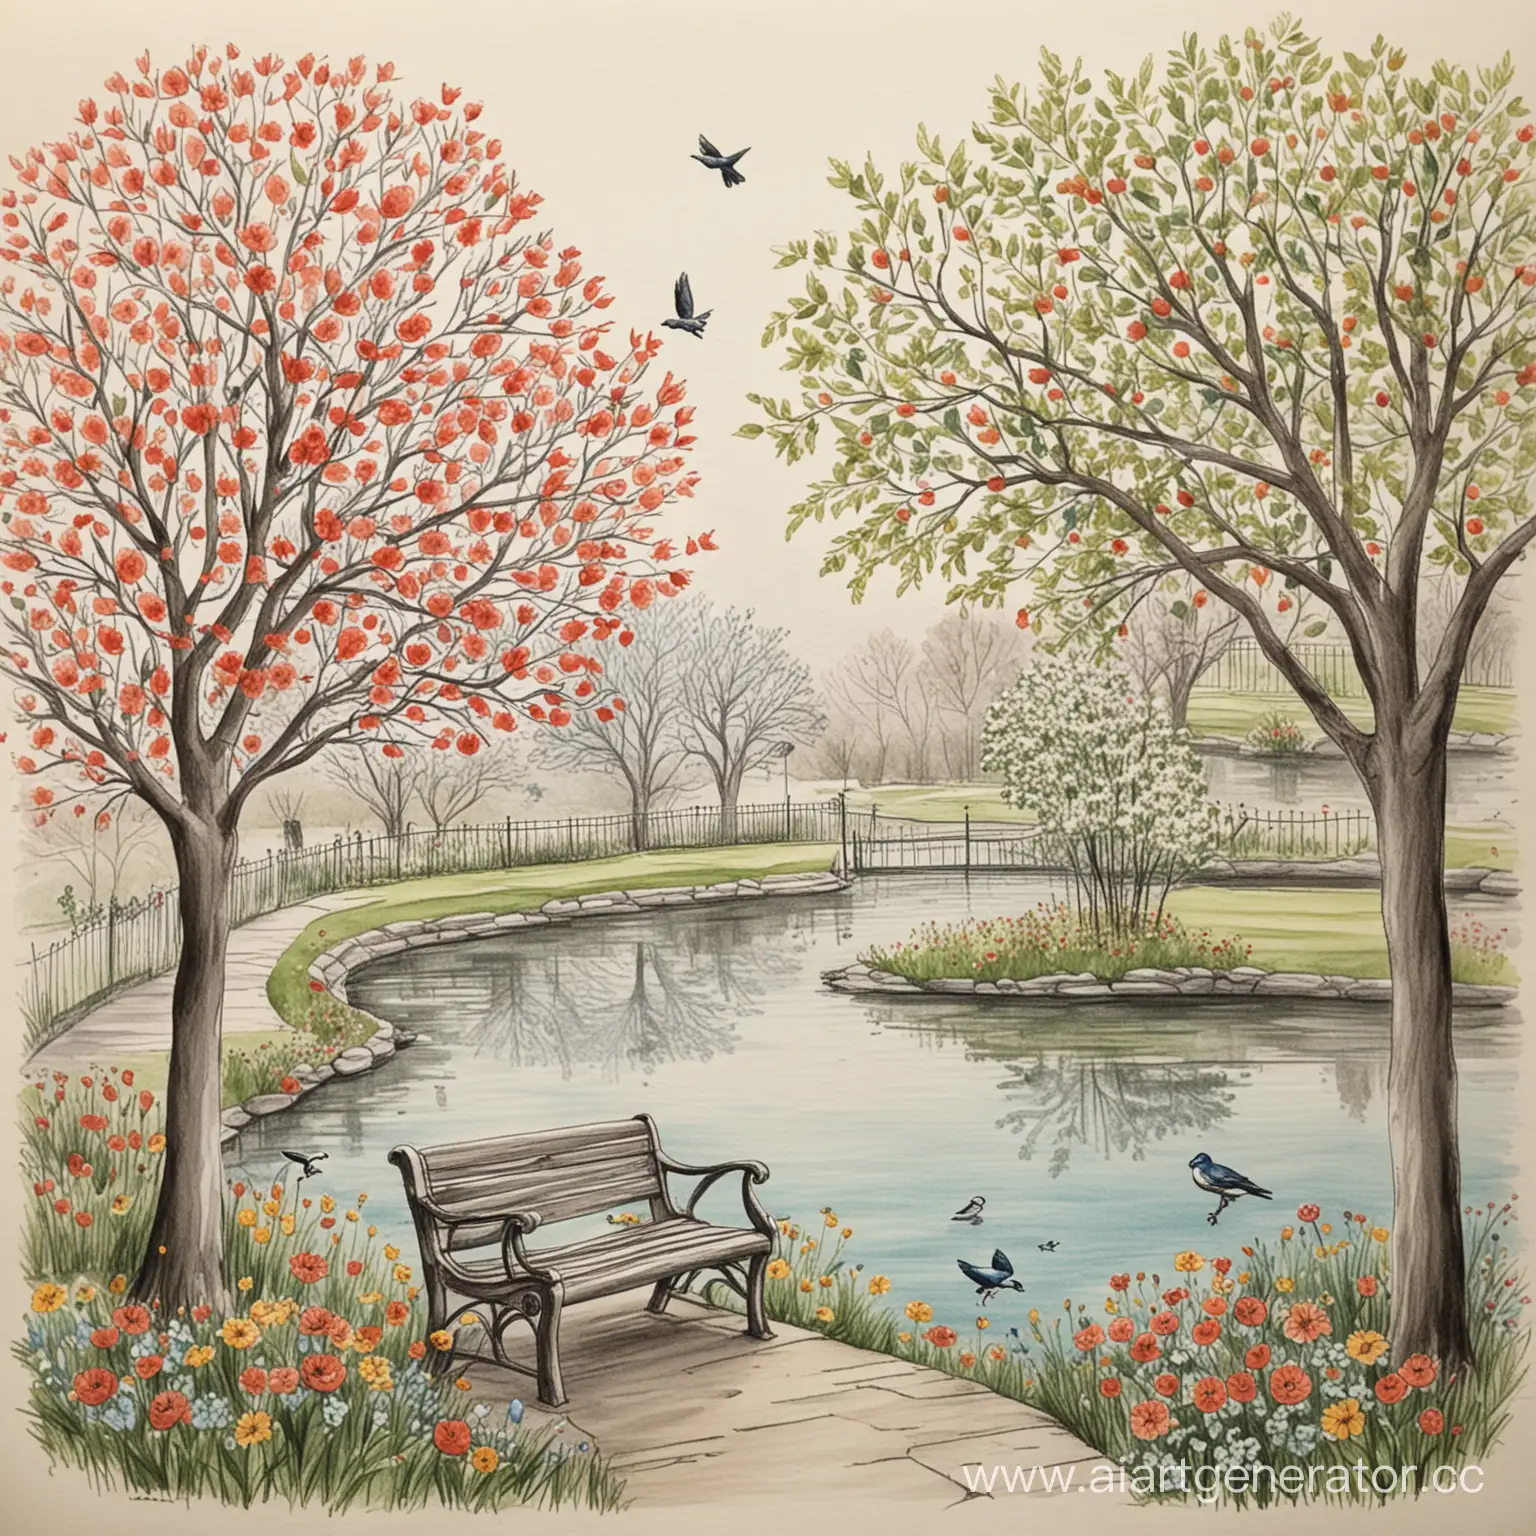 Нарисуй парк, где обязательно есть яблоня, птицы на деревьях, лавочка, цветы и пруд